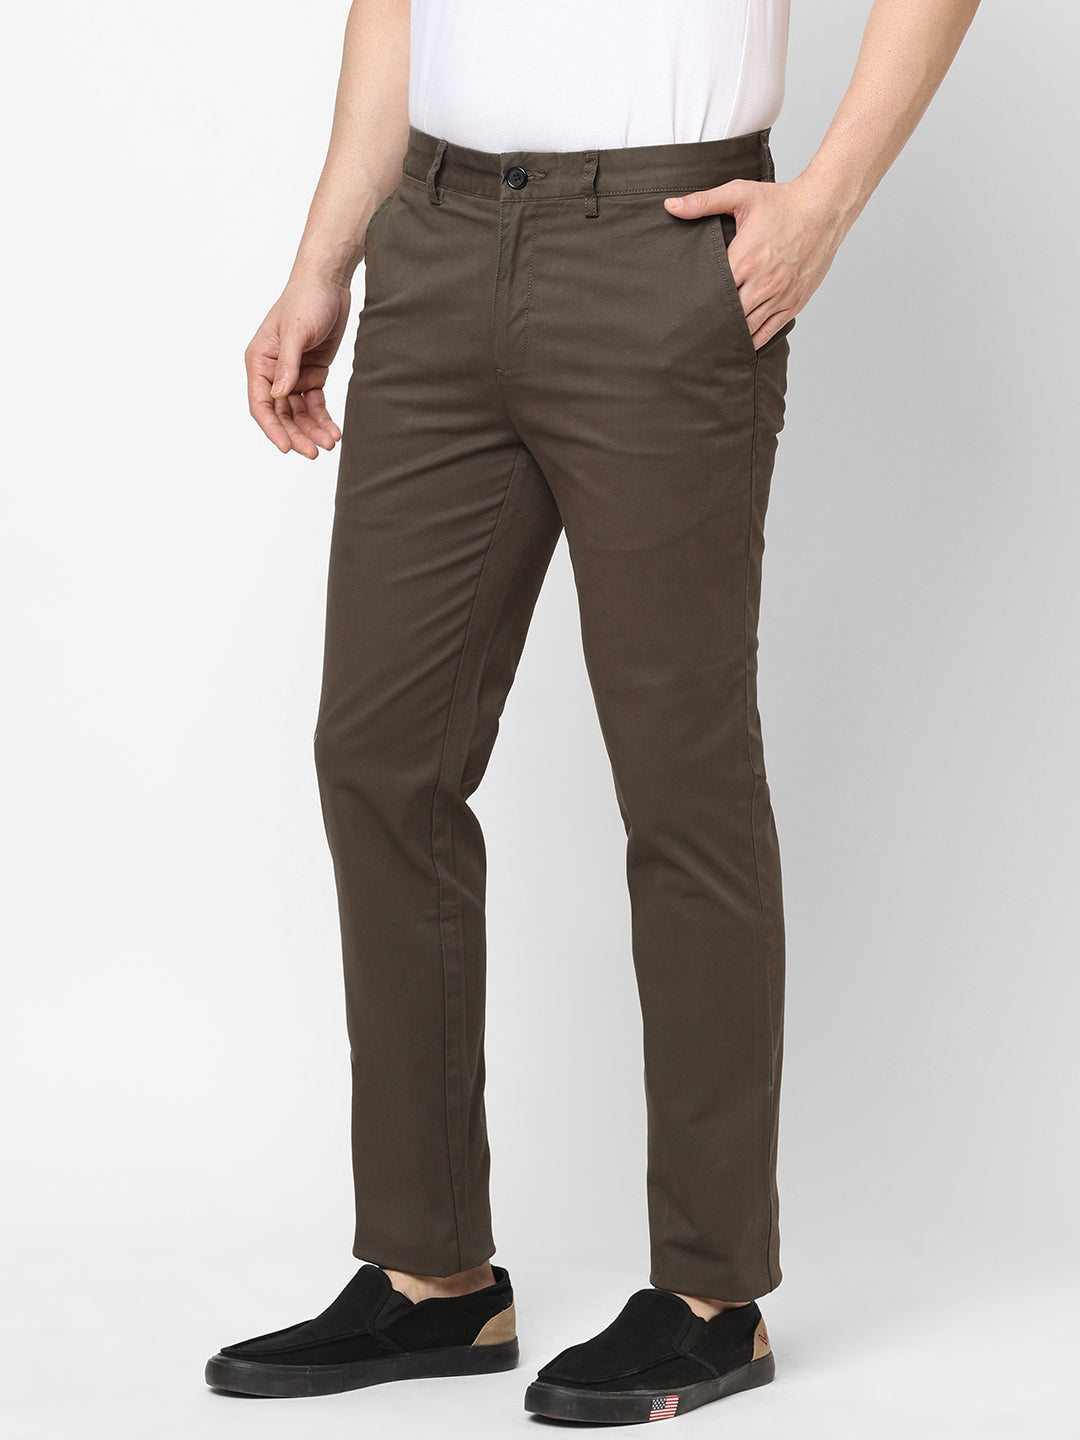 Buy Krystle Men's Regular Fit Cotton Cargo Pants  (KRY-GREEN-NEW-ZIP1-CARGO34_Green_34) at Amazon.in